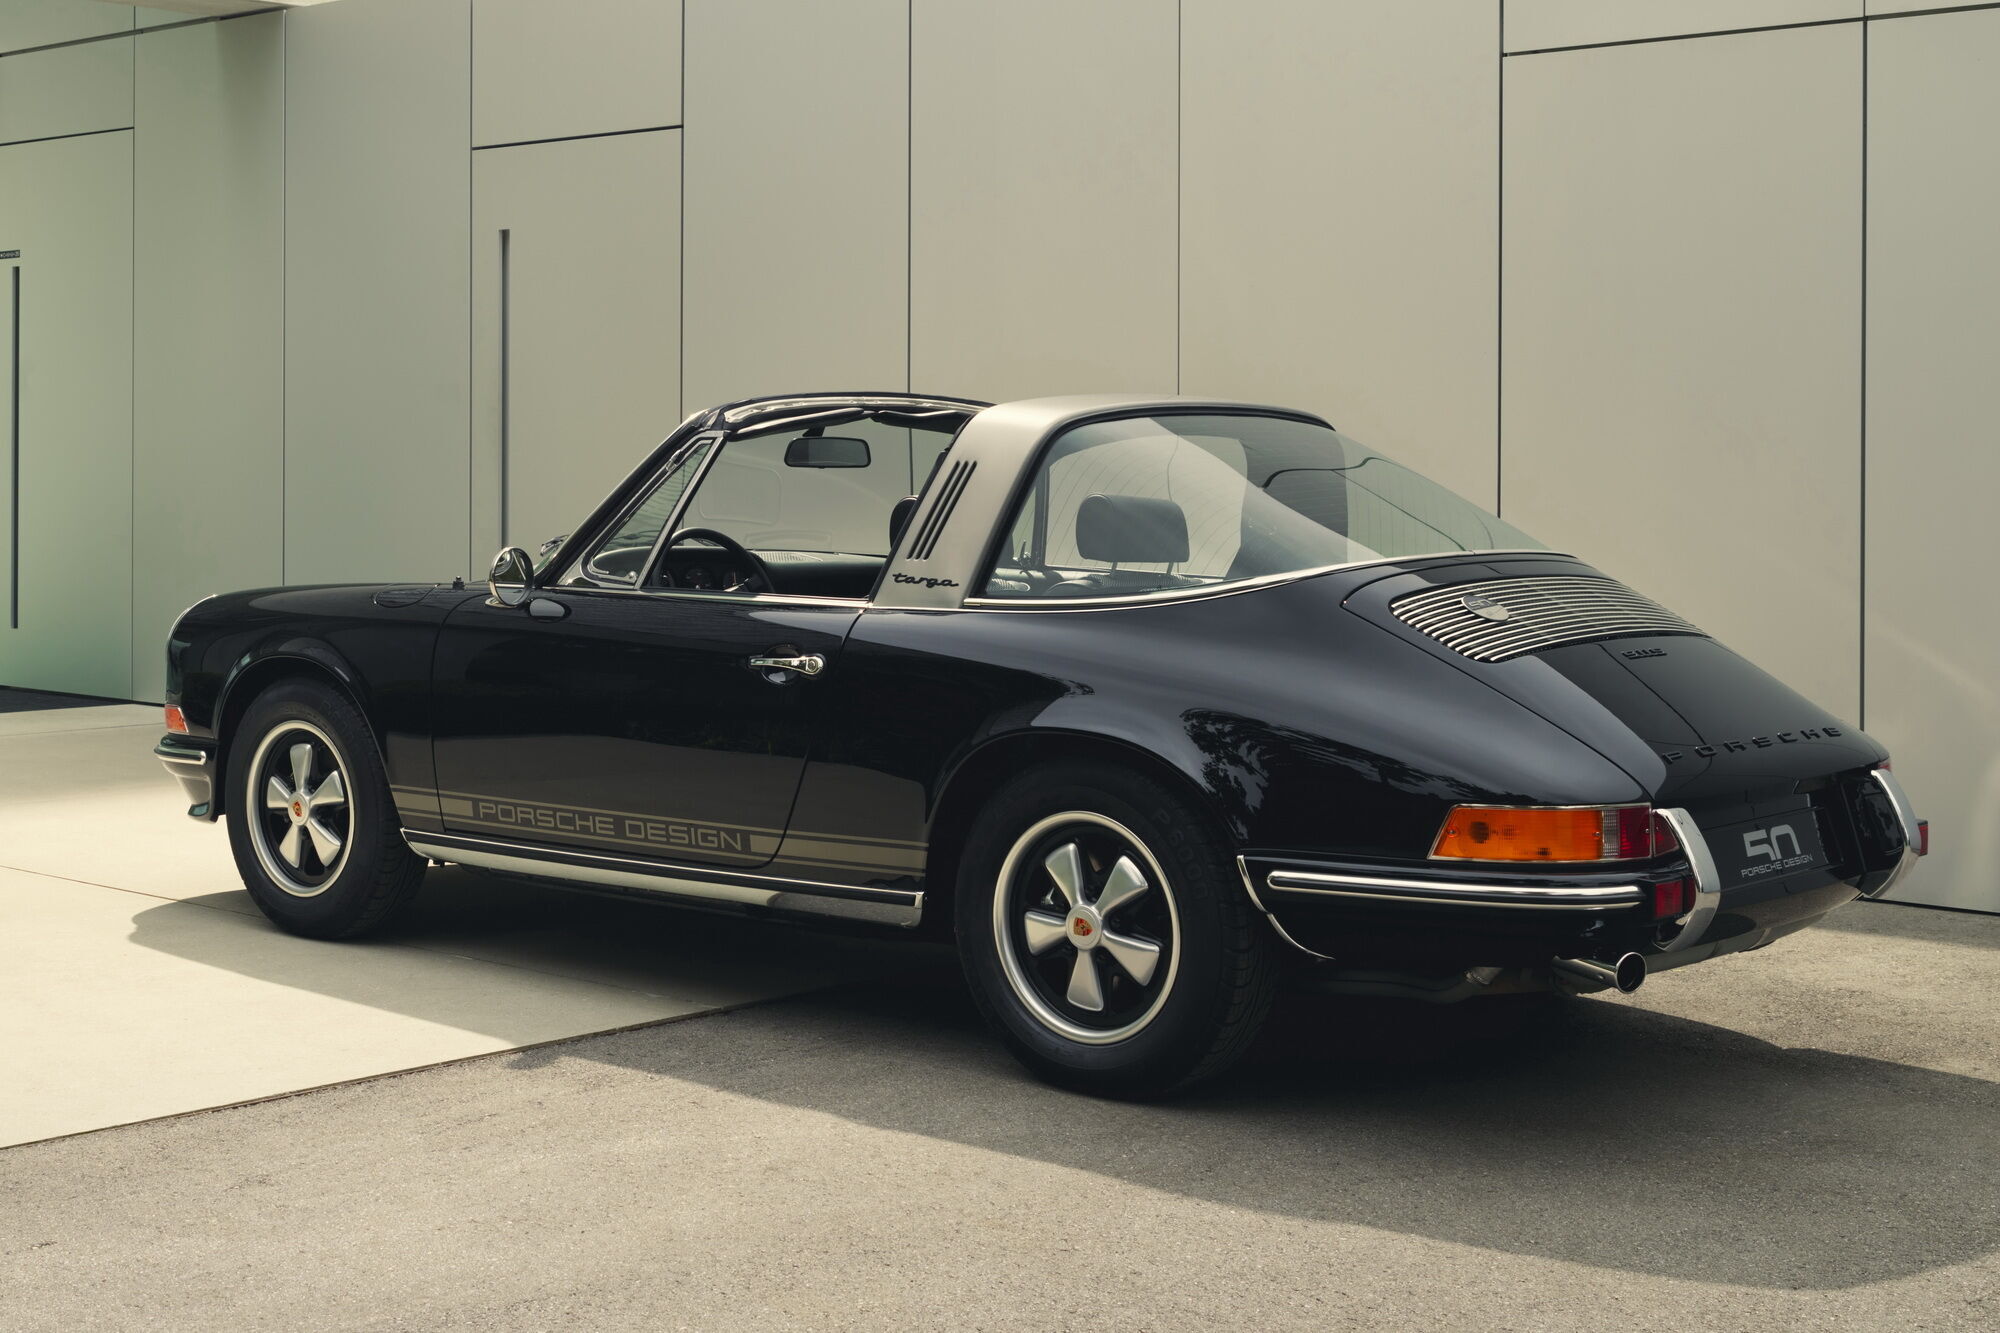 Автомобиль окрасили в черный цвет, а боковые панели кузова украсили полосами платинового цвета и надписью Porsche Design